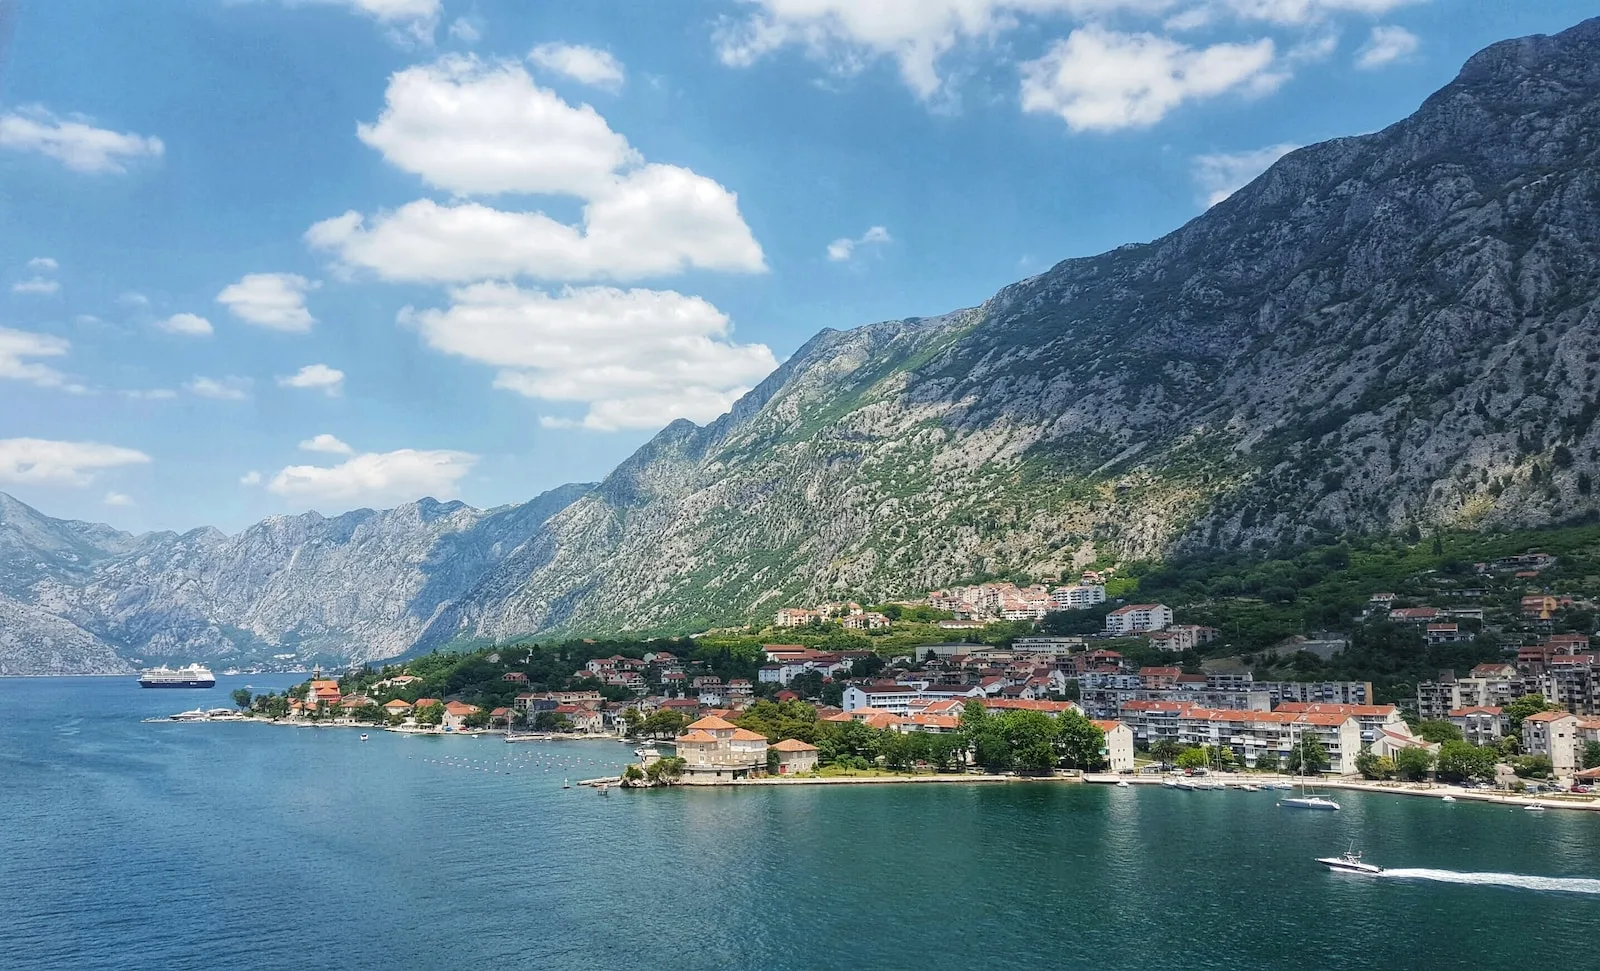 Kotor: Gioiello Nascosto del Montenegro tra Storia, Mare e Montagne Maestose